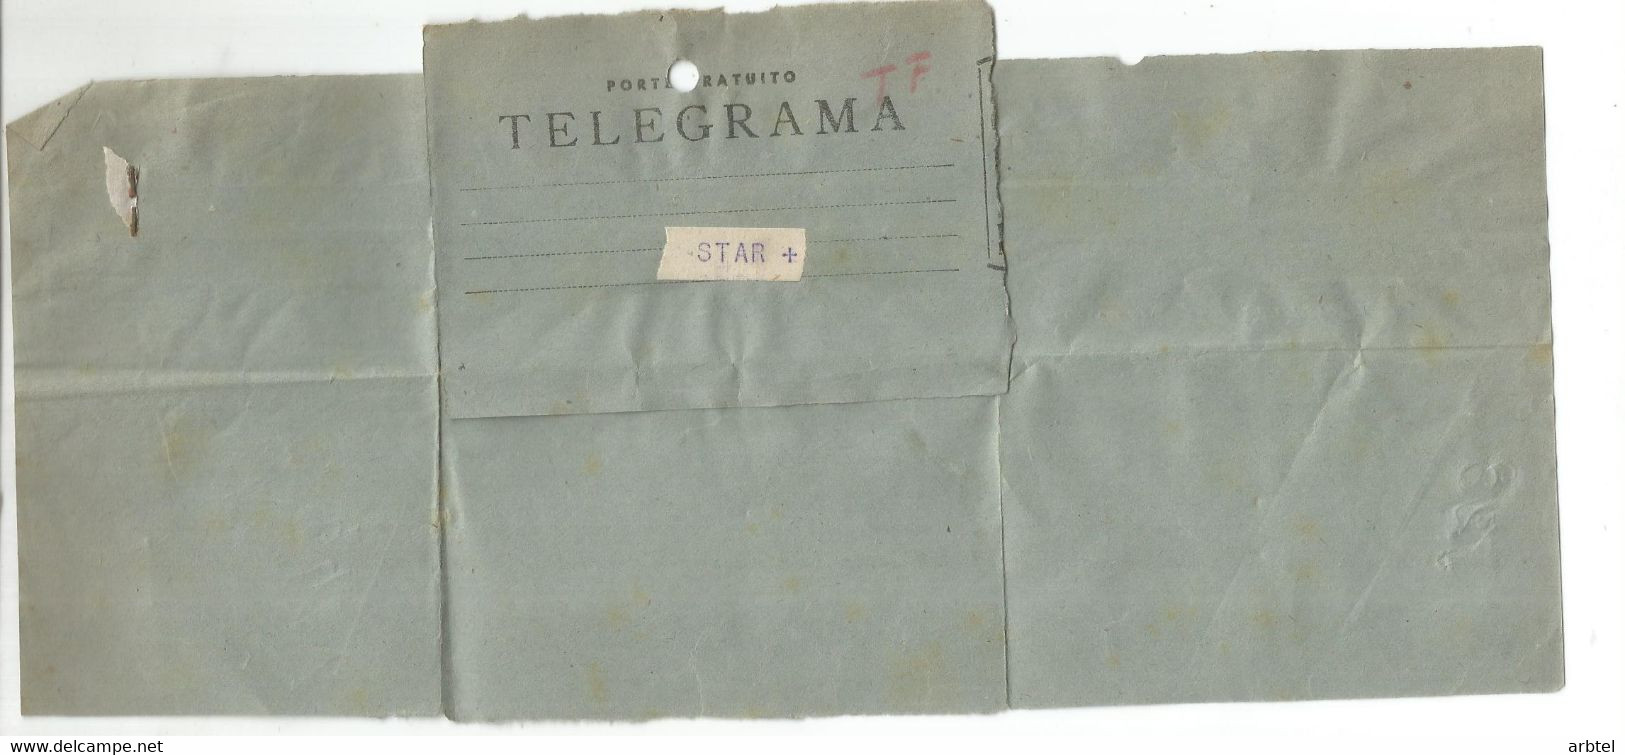 TELEGRAMA DE SILLEDA A EIBAR FABRICA DE ARMAS STAR MAT TELECOMNUNICACIONES GUN FACTORY - Telegramas